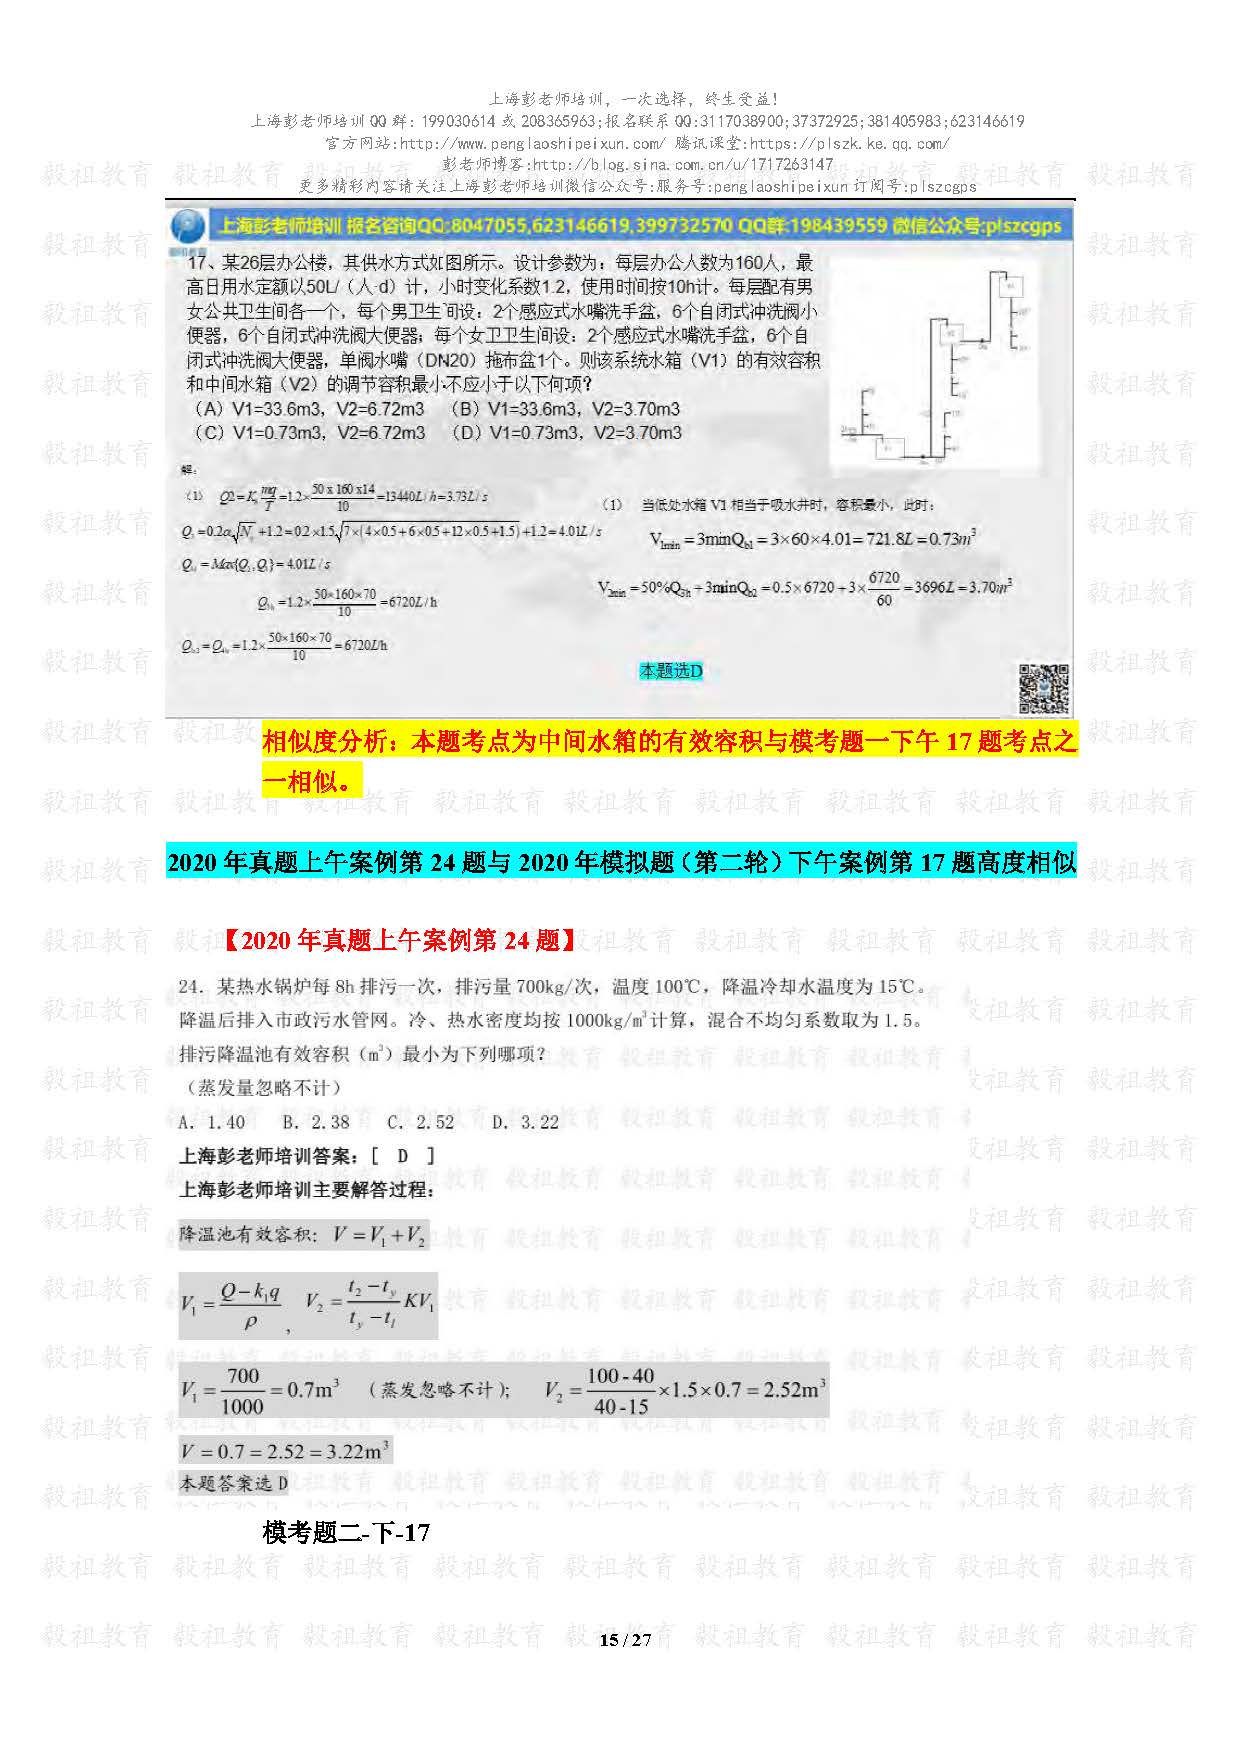 2020注册给排水考试真题与模考题相似度分析-上海彭老师培训_页面_15.jpg.jpg